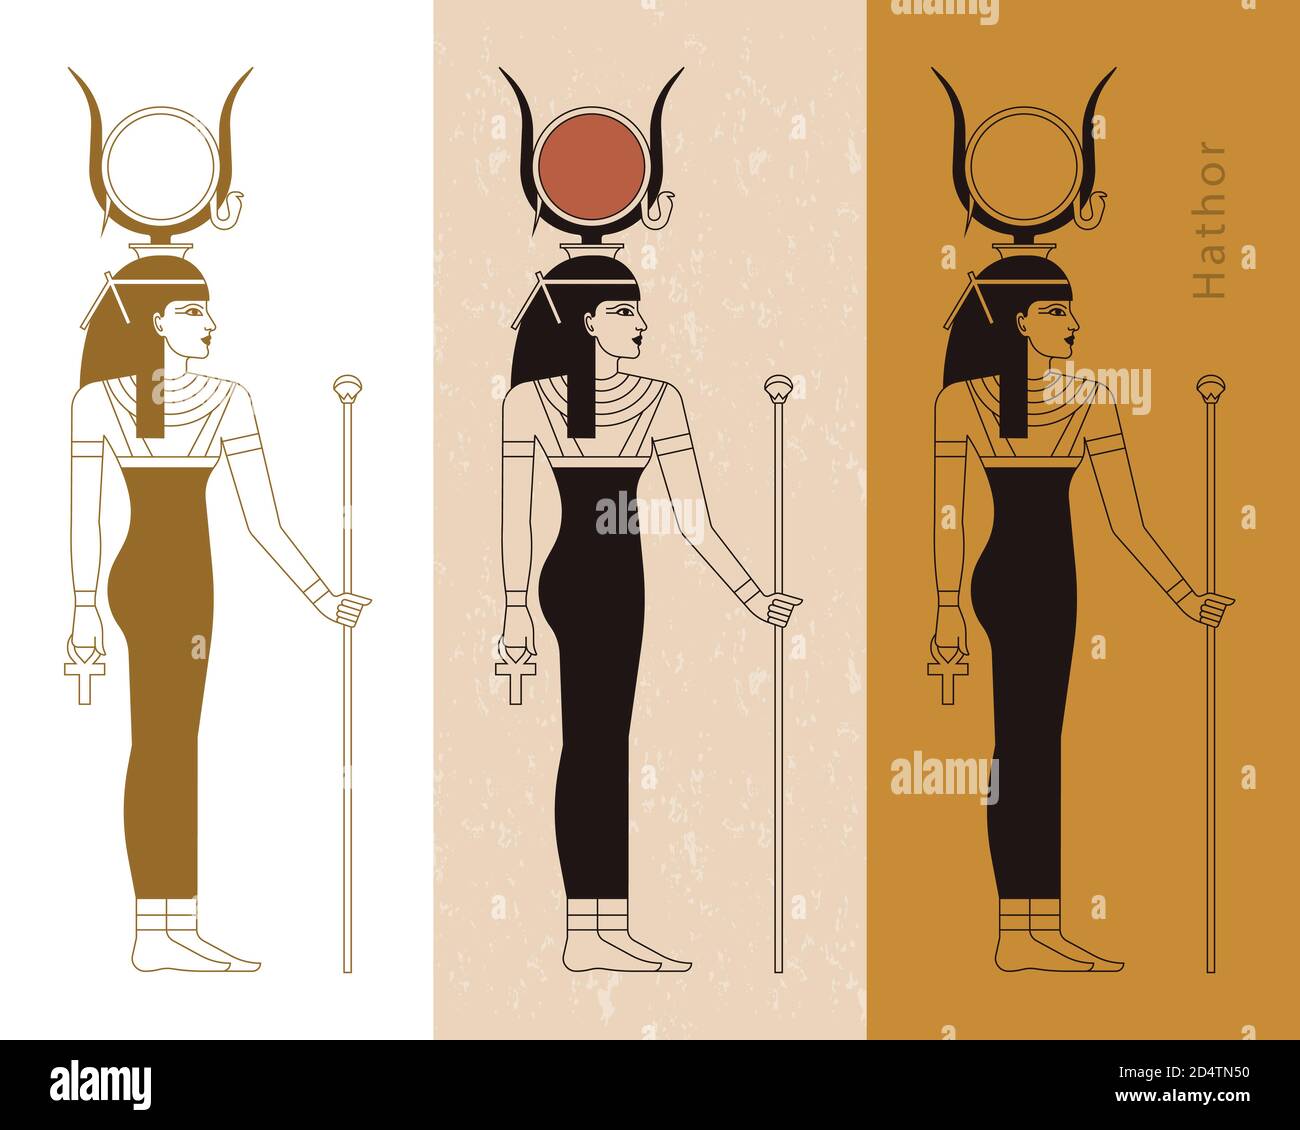 Una collezione di illustrazioni vettoriali dell'antica dea egizia Hathor della caviglia. Illustrazione Vettoriale